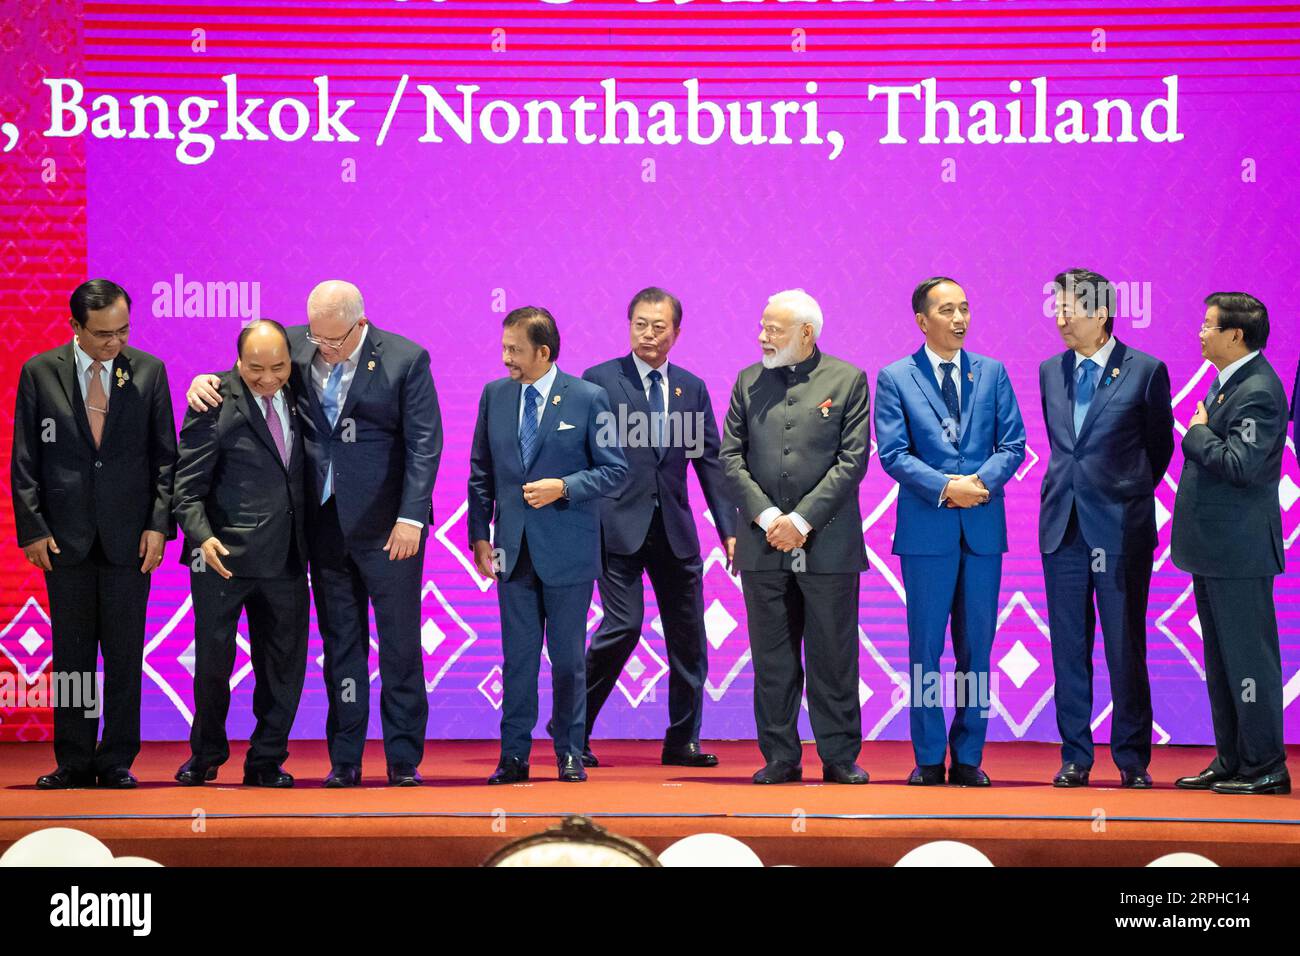 191104 -- BANGKOK, 4 novembre 2019 -- da L a R Thai il primo ministro Prayut Chan-o-cha, il primo ministro vietnamita Nguyen Xuan Phuc, il primo ministro australiano Scott Morrison, il sultano del Brunei Haji Hassanal Bolkiah, il presidente sudcoreano Moon Jae-in, il primo ministro indiano Narendra modi, il presidente indonesiano Joko Widodo, il primo ministro giapponese Shinzo Abe e il primo ministro del Laos Thongloun Sisoulith partecipano a una sessione fotografica durante il 14° vertice dell'Asia orientale a Bangkok, Thailandia, 4 novembre 2019. Il summit è un evento regionale annuale che riunisce 10 membri dell'Associazione delle Nazioni del Sud-Est Asiatico ASEAN, a Foto Stock